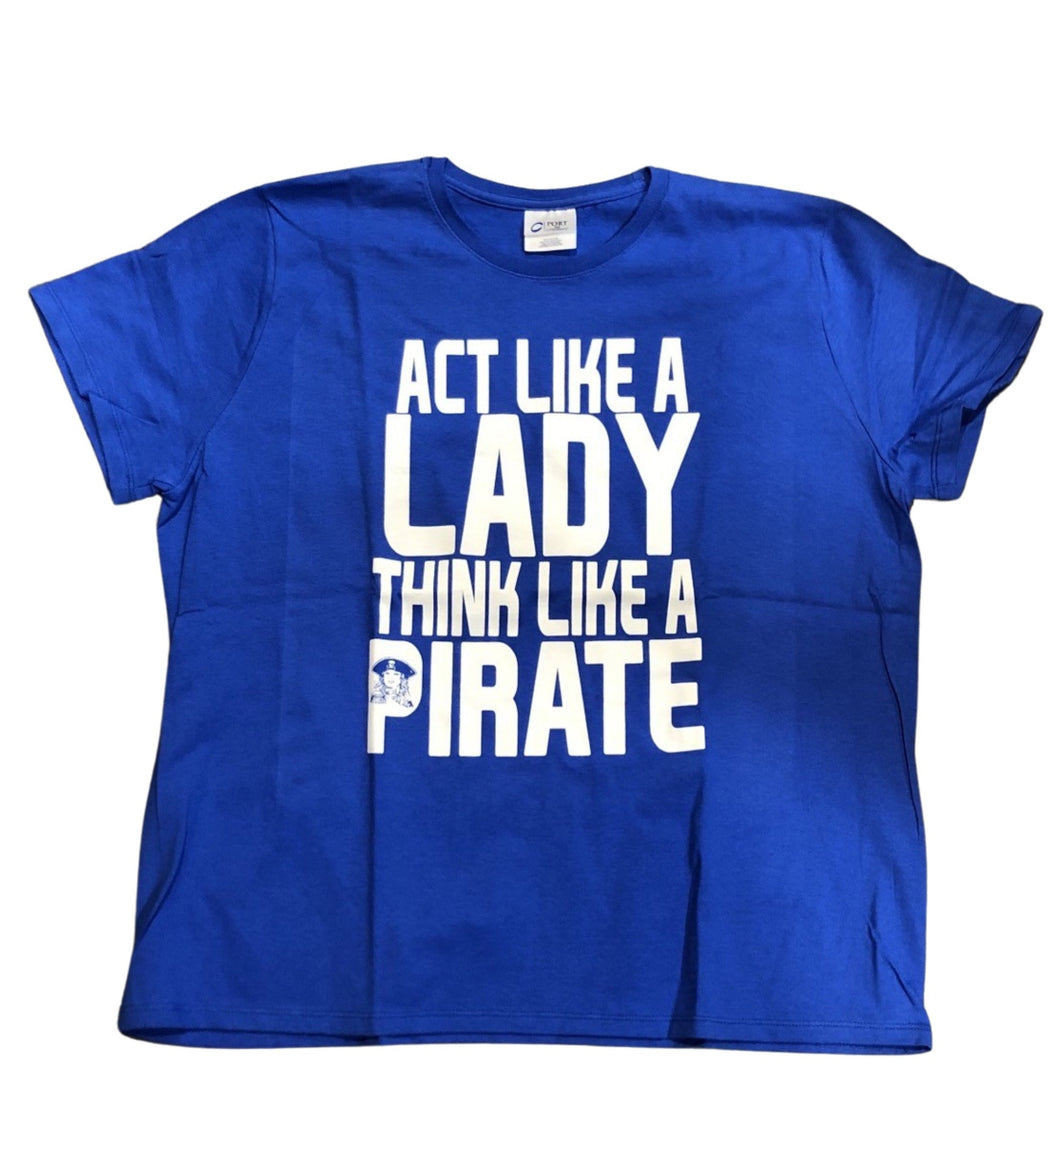 Hampton University: Act Like A Lady, Think Like A Pirate